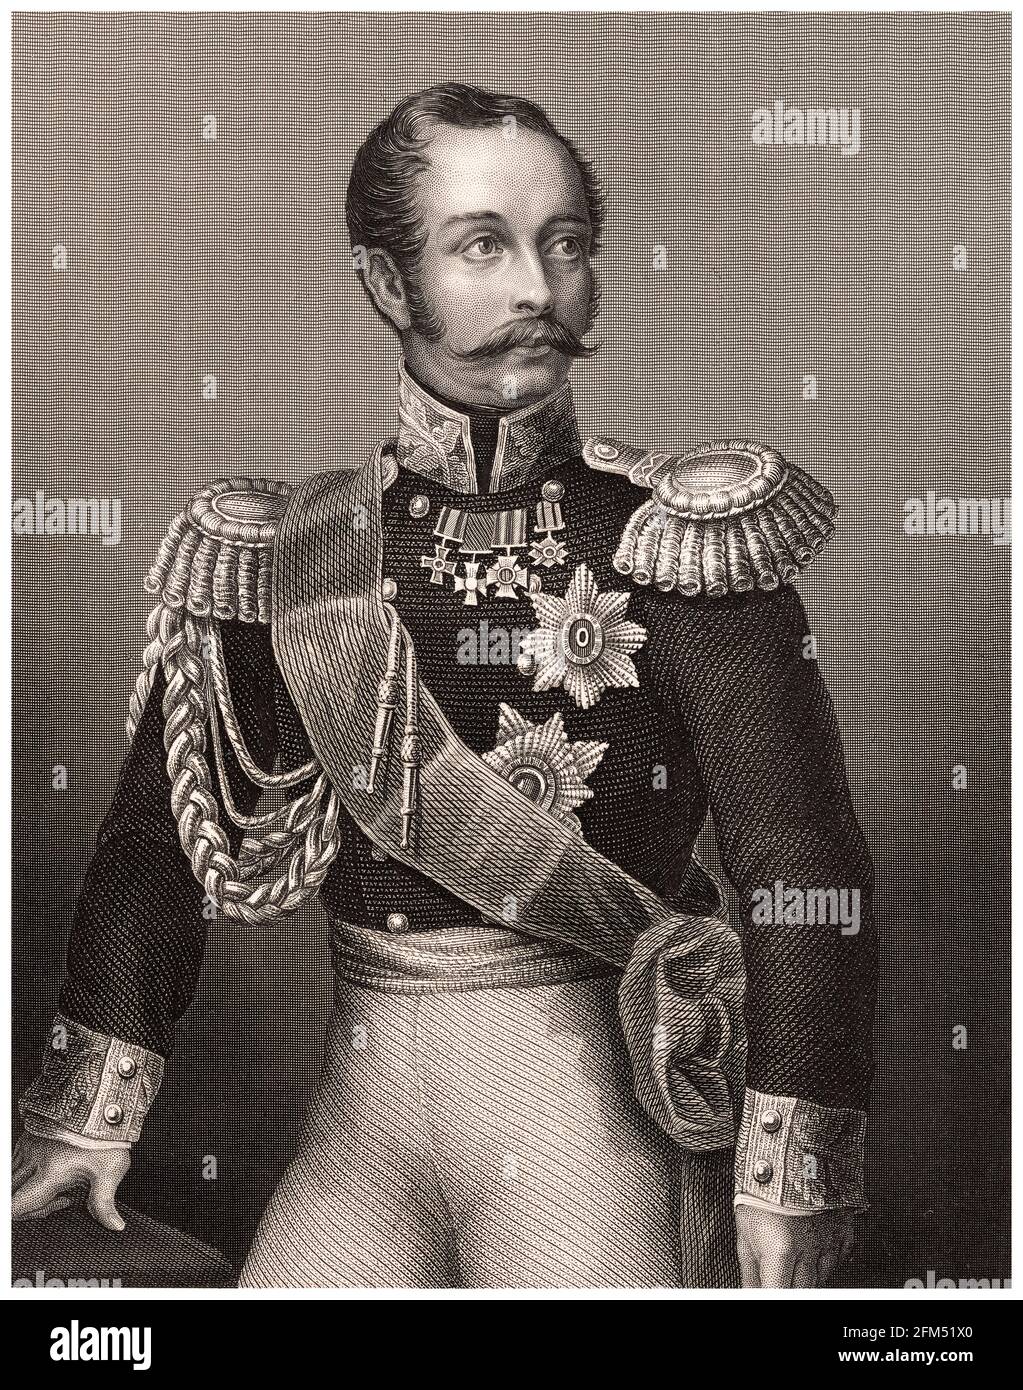 Alessandro II (1818-1881), Imperatore di Russia (1855-1881), incisione ritratto di DJ Pound, circa 1850 Foto Stock